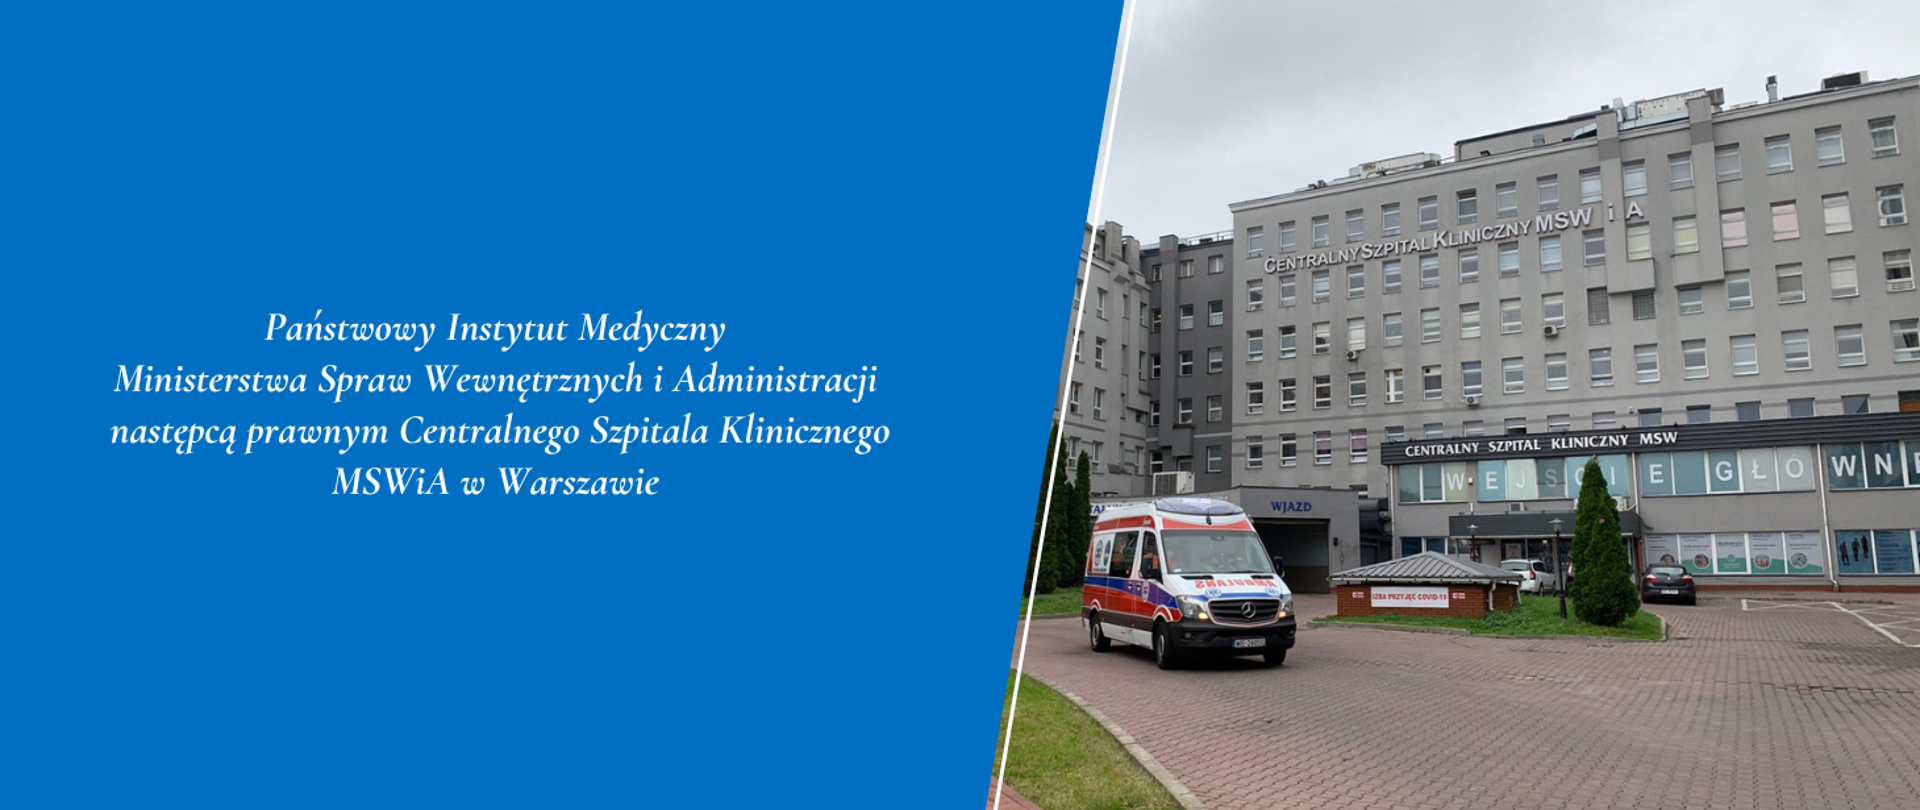 Państwowy Instytut Medyczny Ministerstwa Spraw Wewnętrznych i Administracji jest następcą prawnym Centralnego Szpitala Klinicznego MSWiA w Warszawie